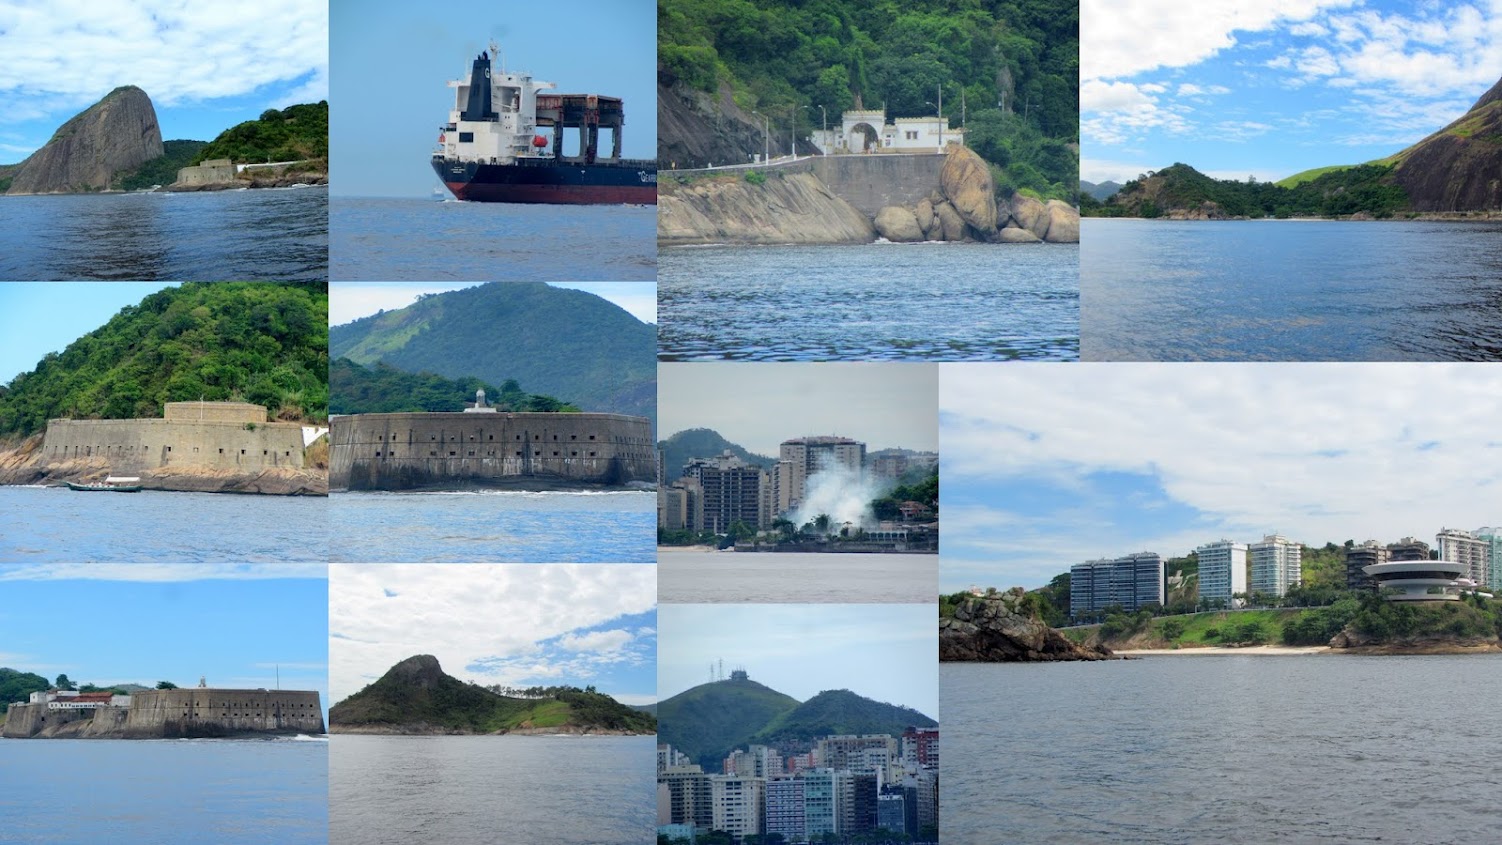 "Да я об этом отпуске полжизни мечтал!" - две недели в Рио